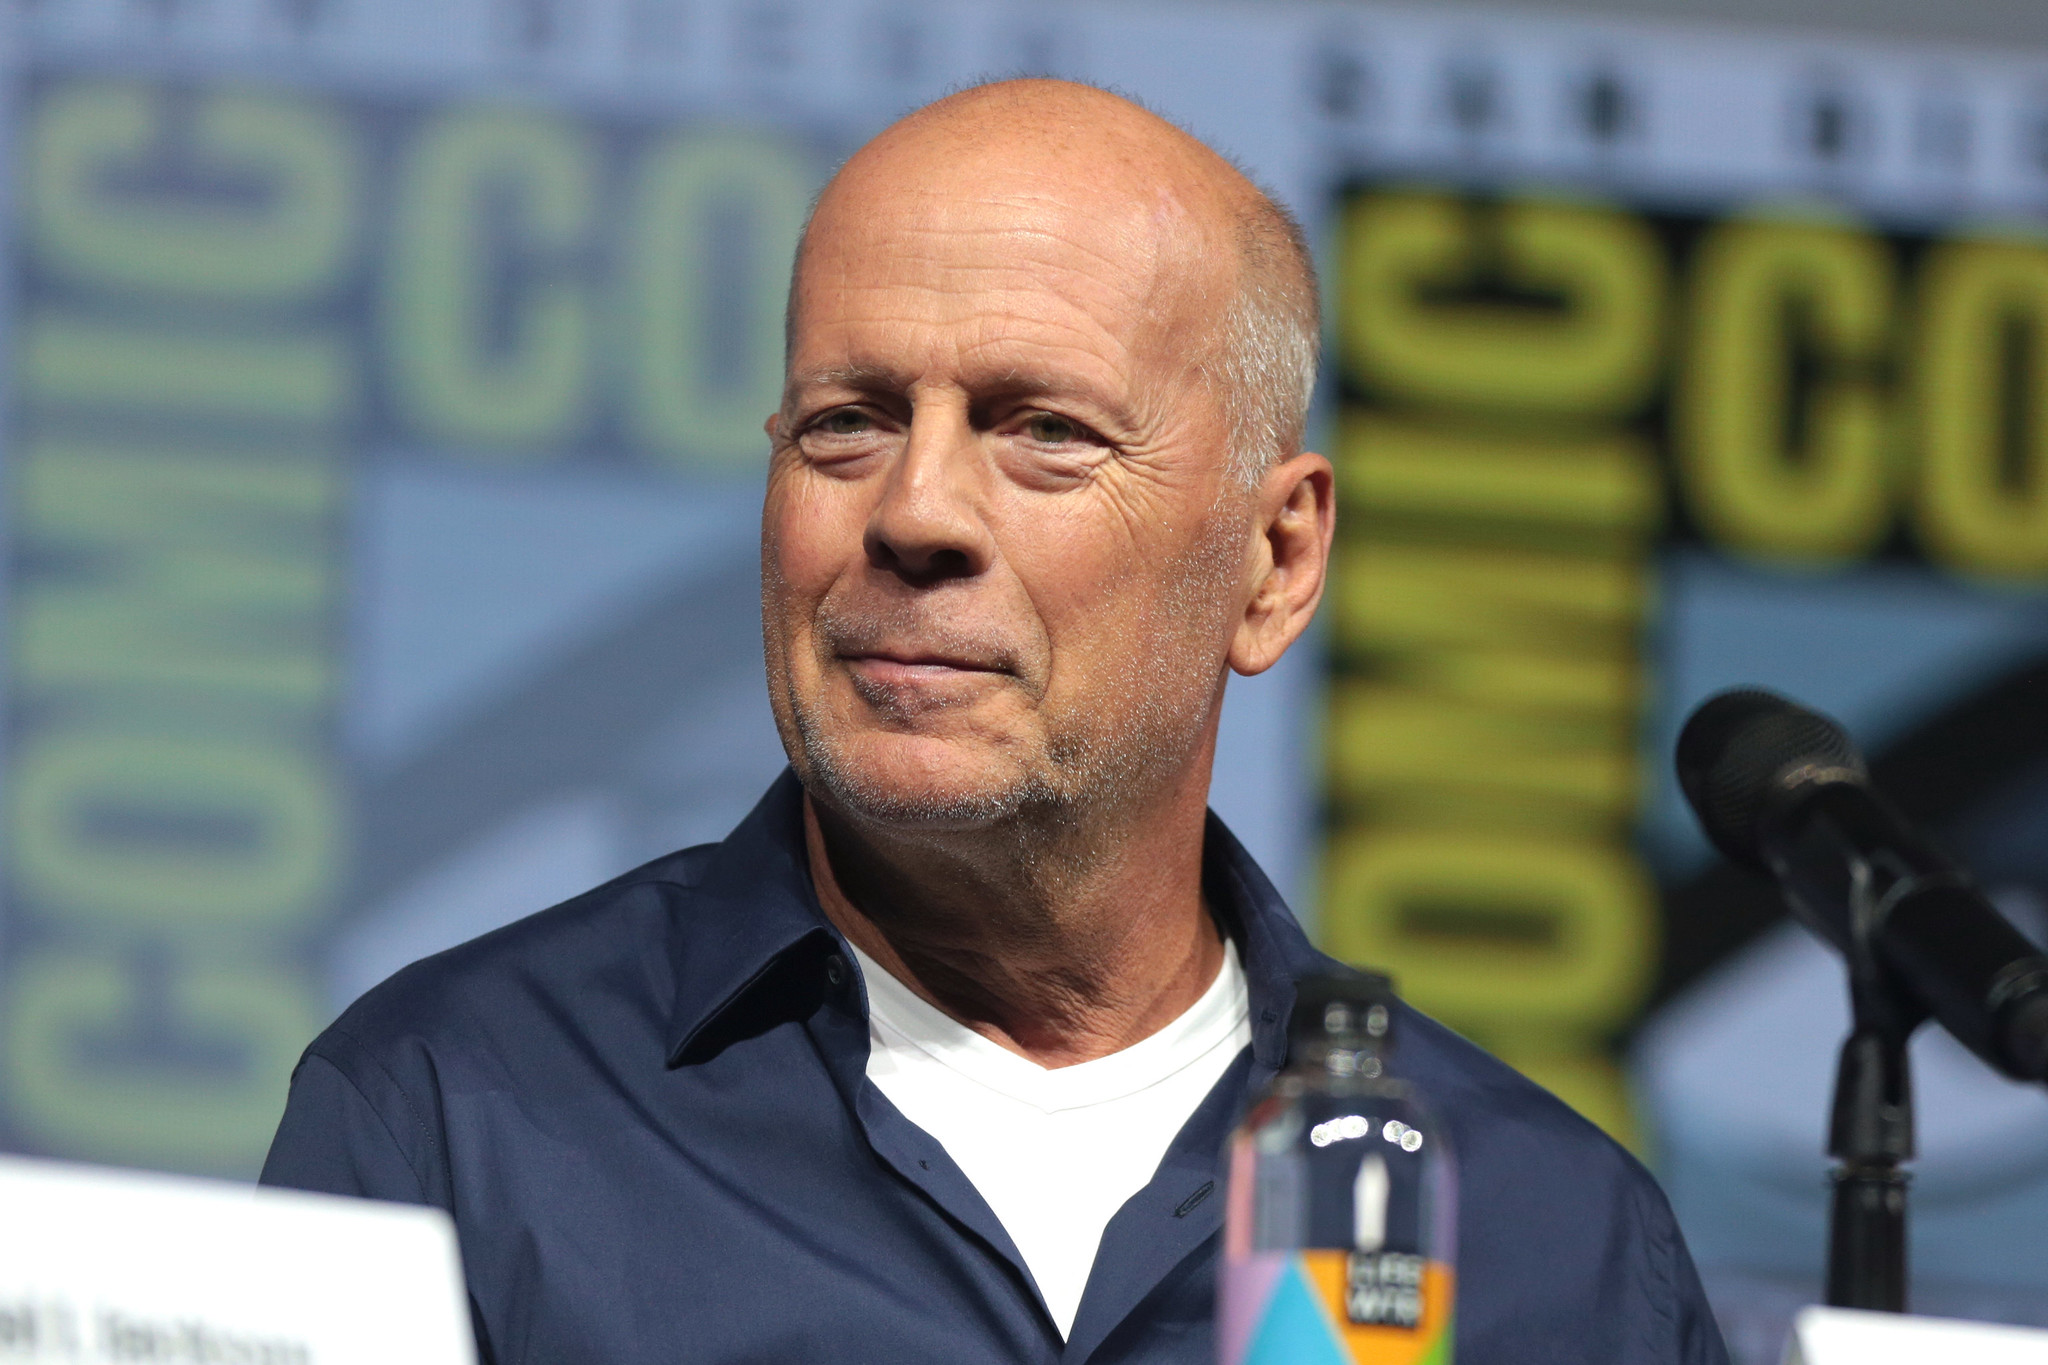 Ator Bruce Willis diagnosticado com demência aos 67 anos